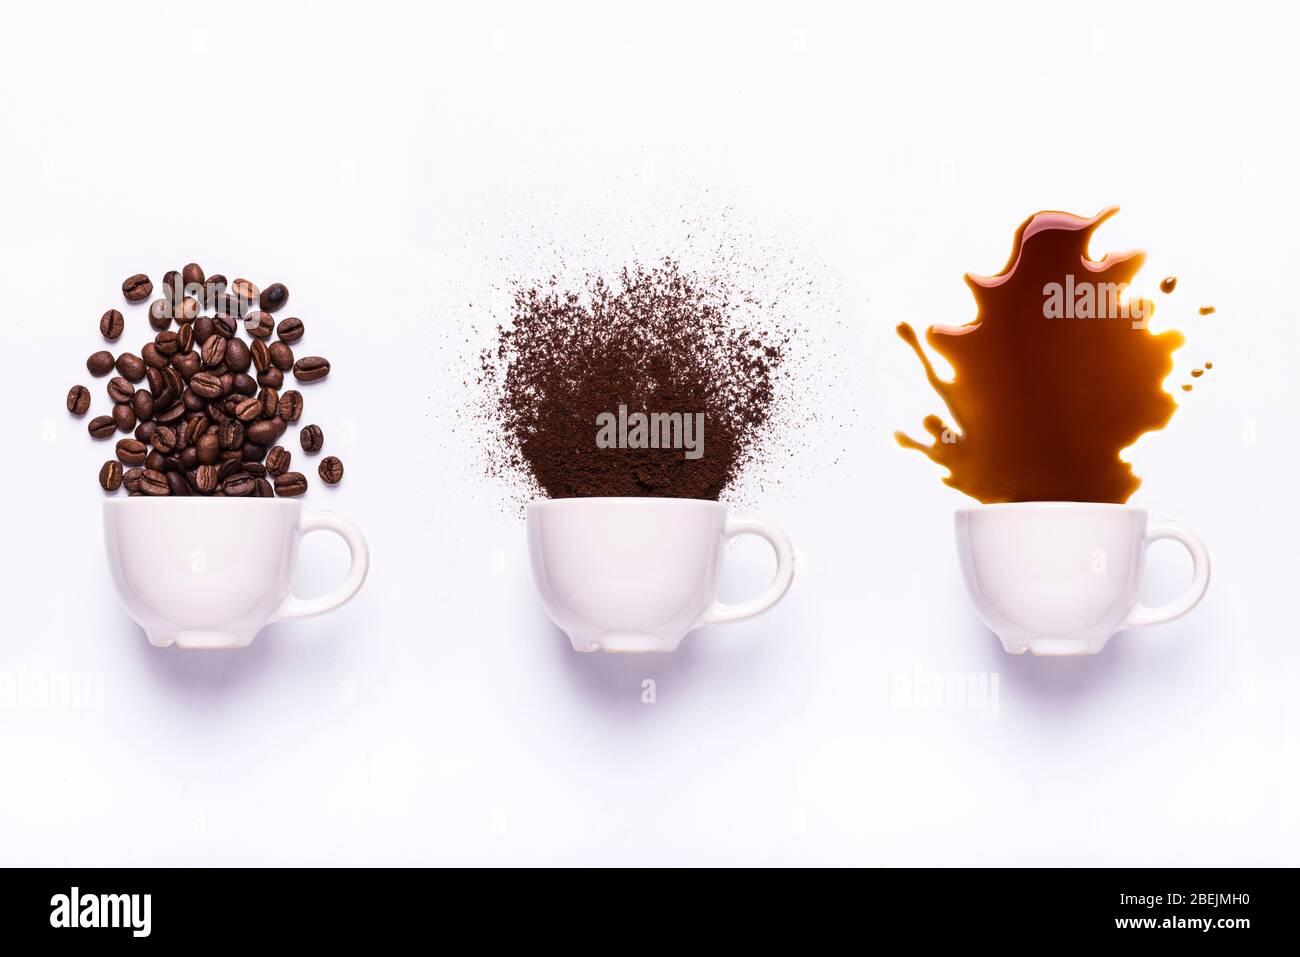 isolato da fondo bianco, tre tazze da cui esce il caffè: in chicchi, macinato e liquido Foto Stock